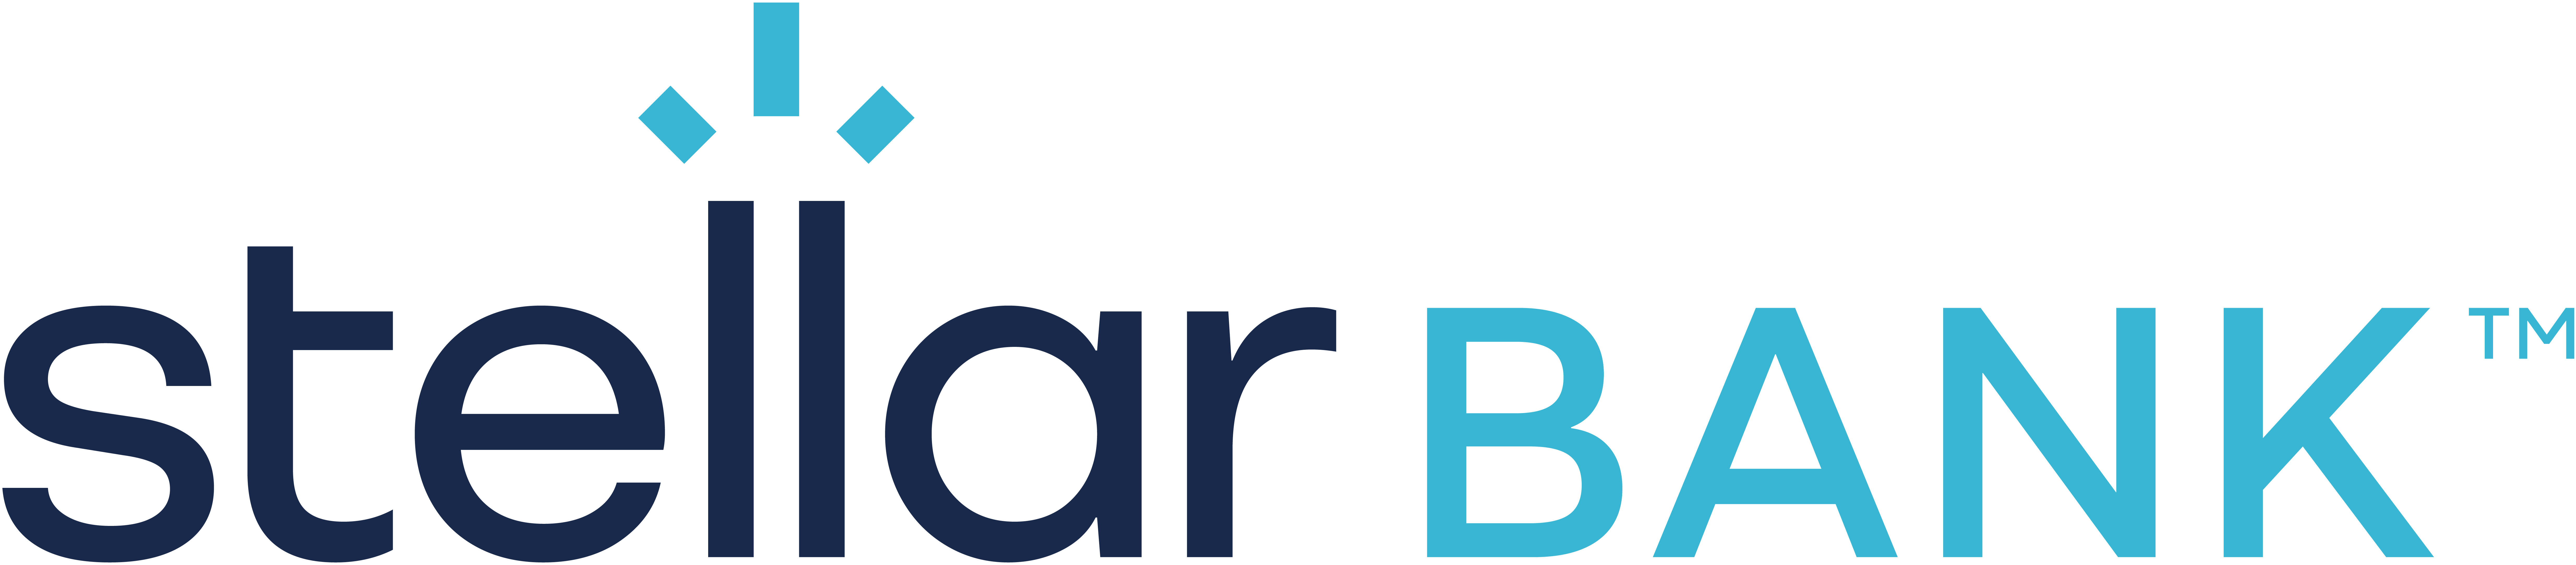 Stellar Bank Stacked Logo